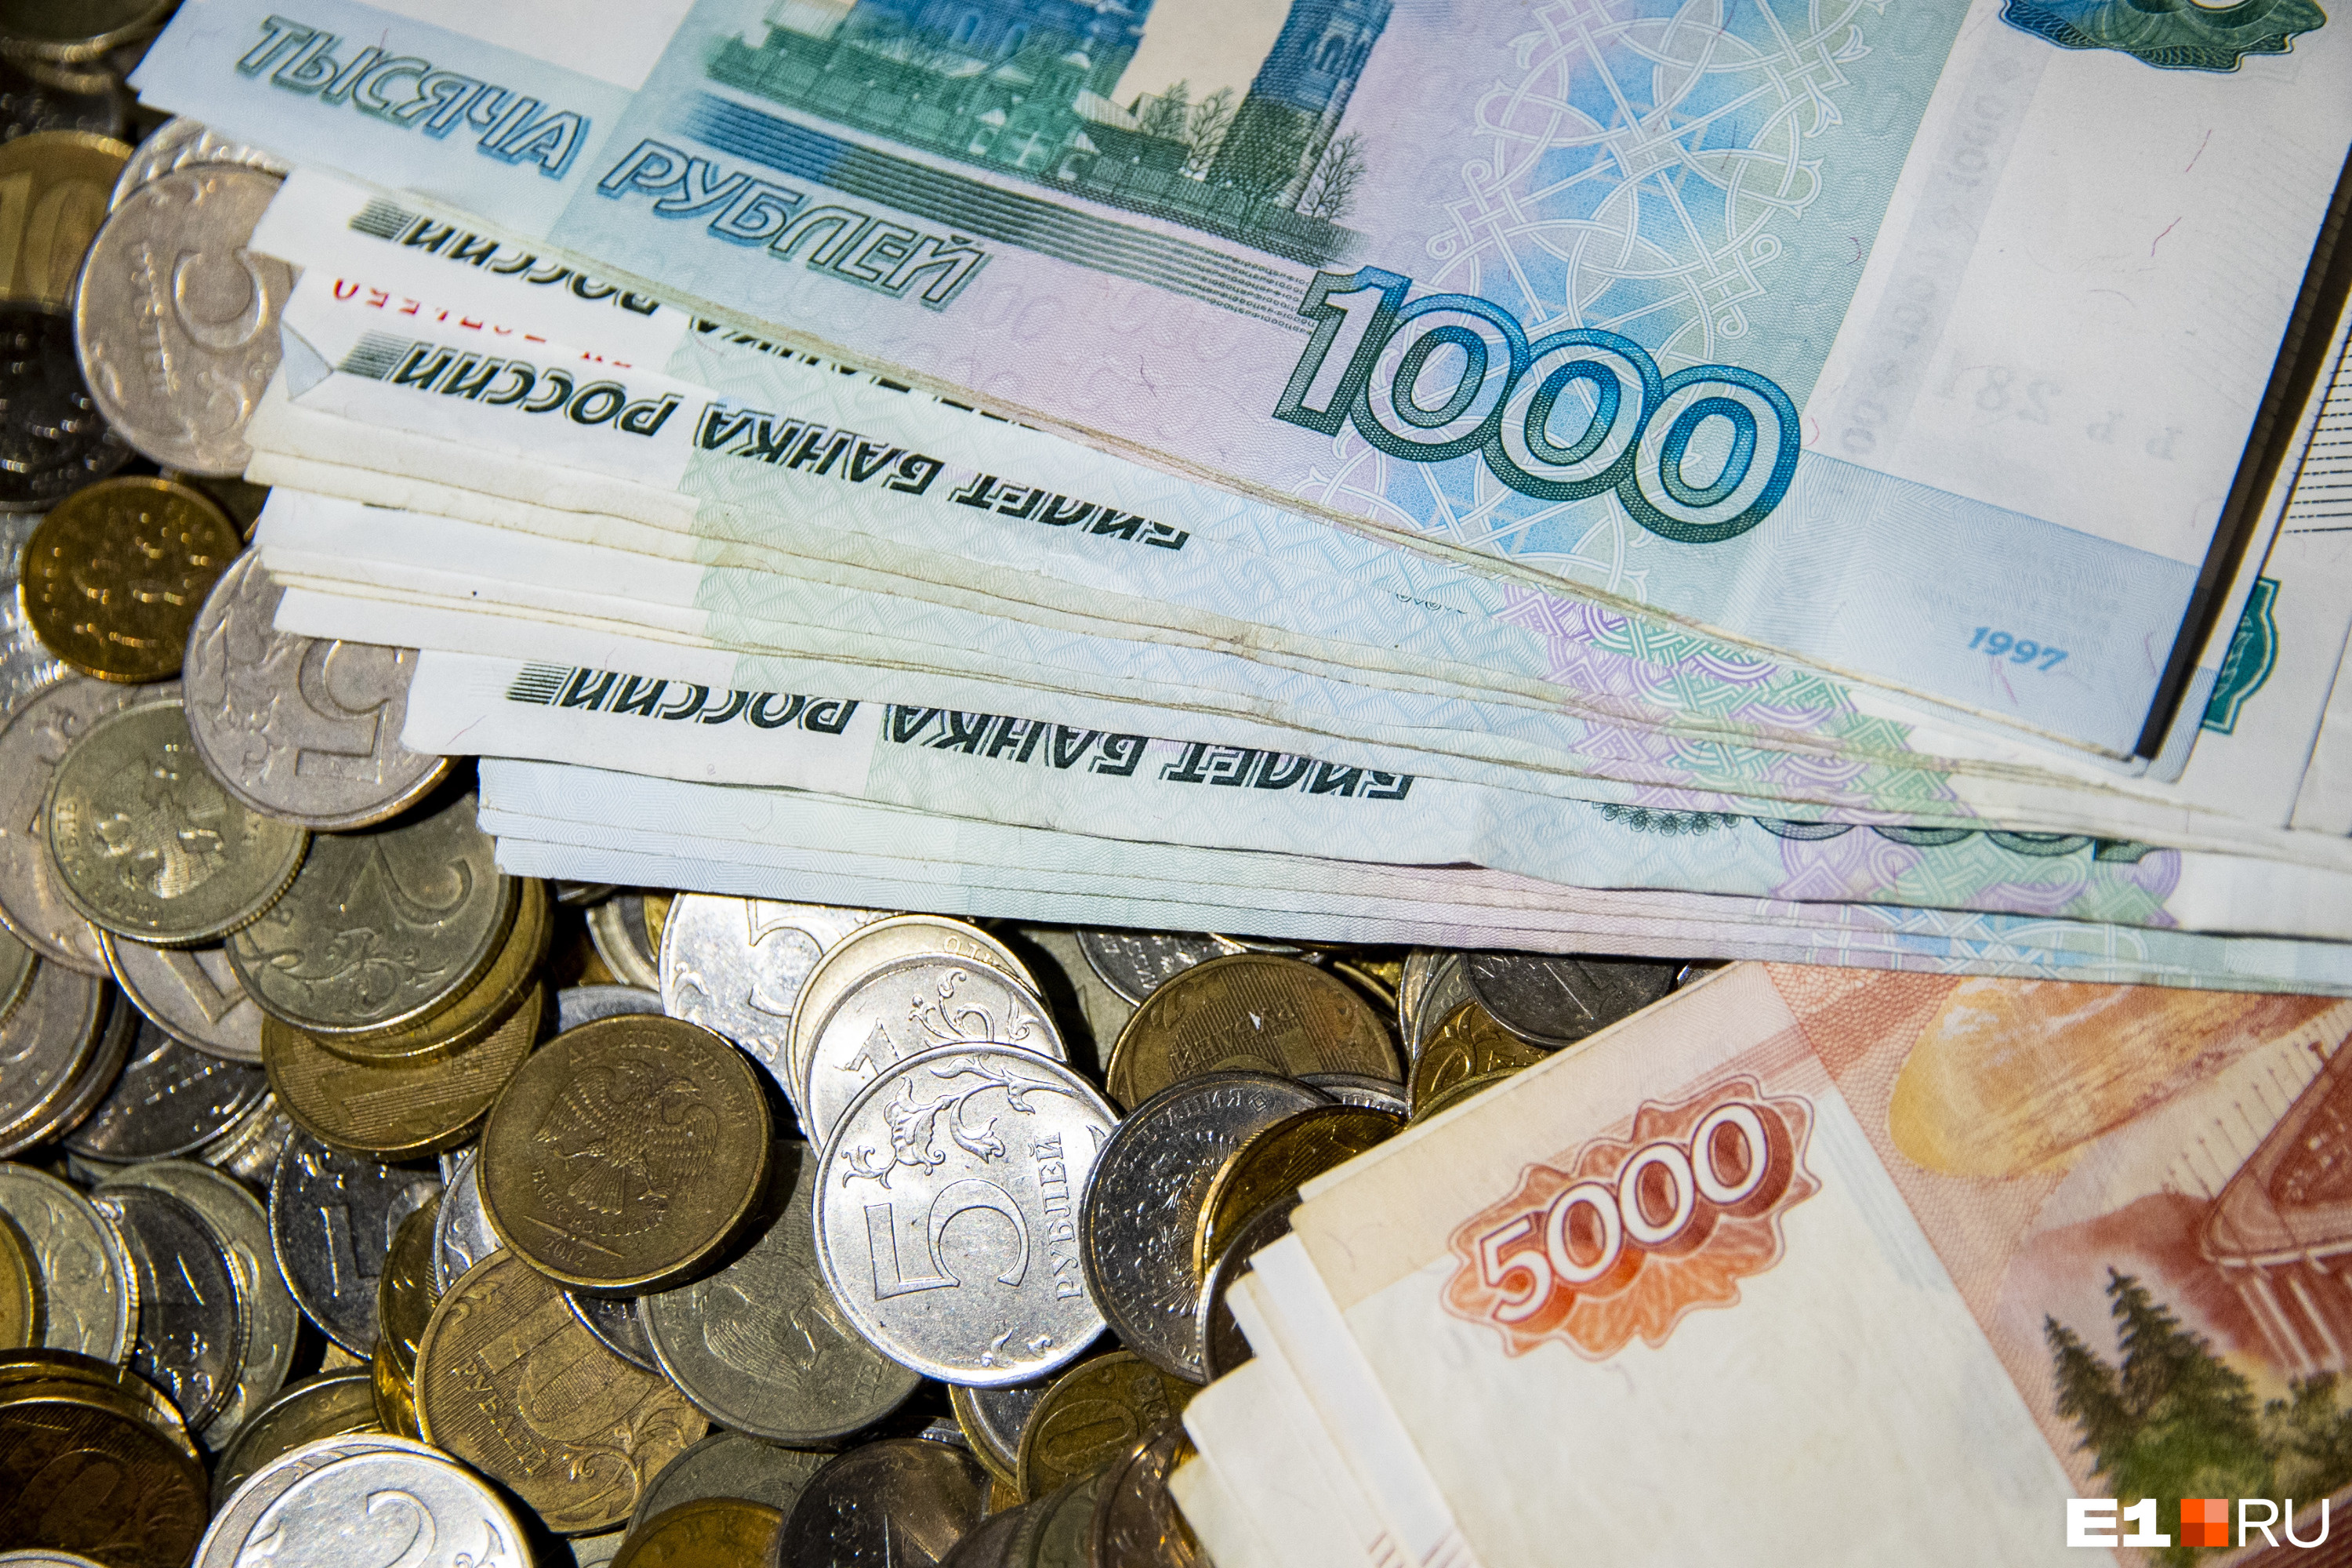 Пенсионерка из Иркутска потеряла более миллиона рублей в попытке заработать на бирже